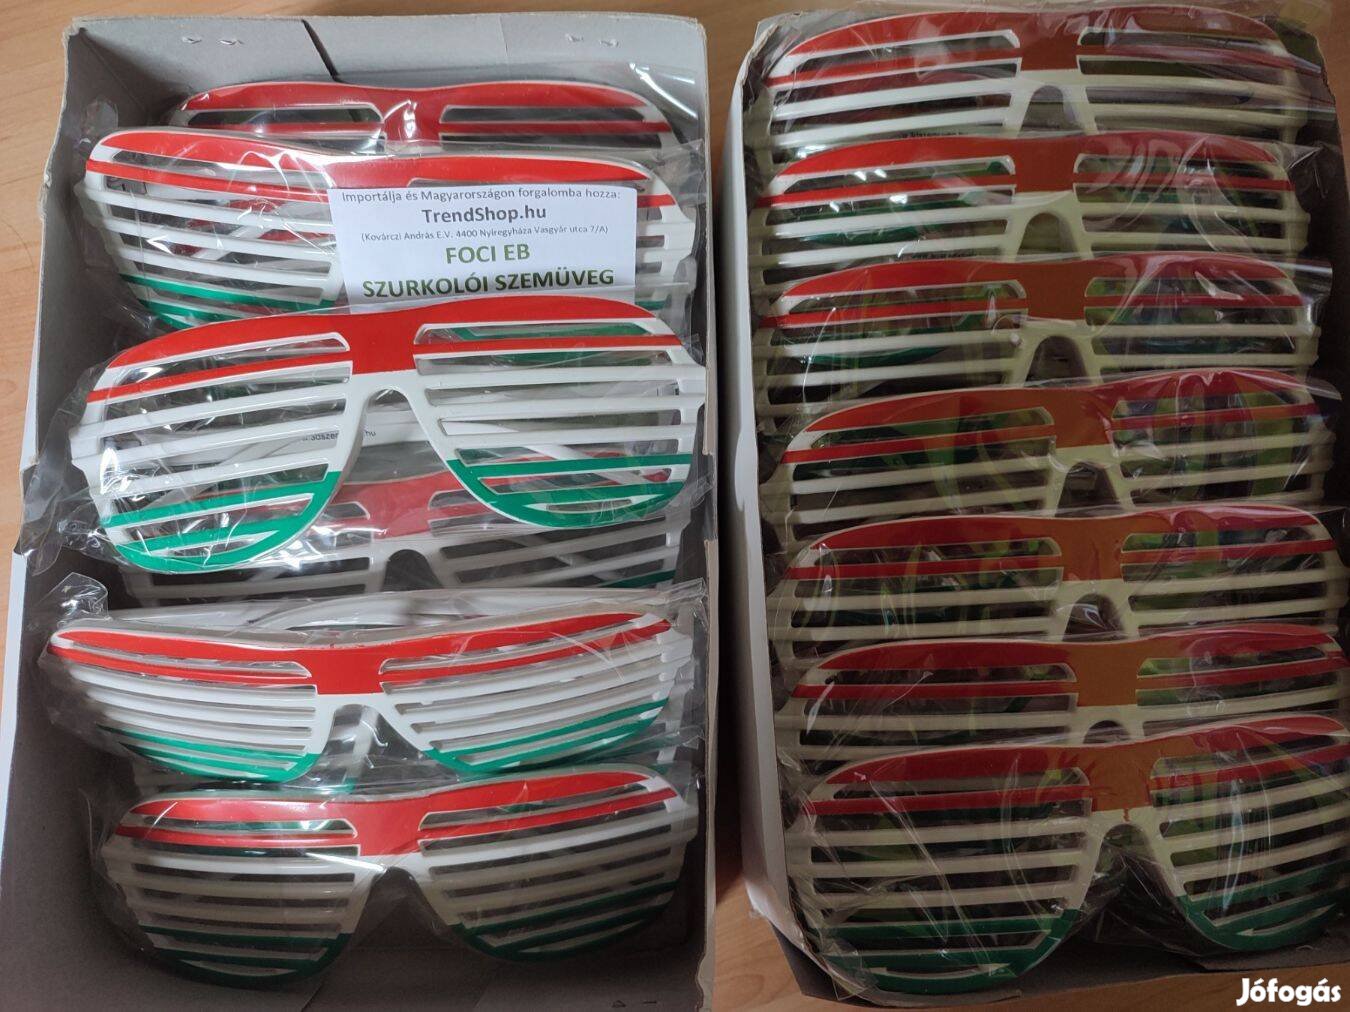 30 db magyar szurkolói szemüveg - Magyarország szemüveg